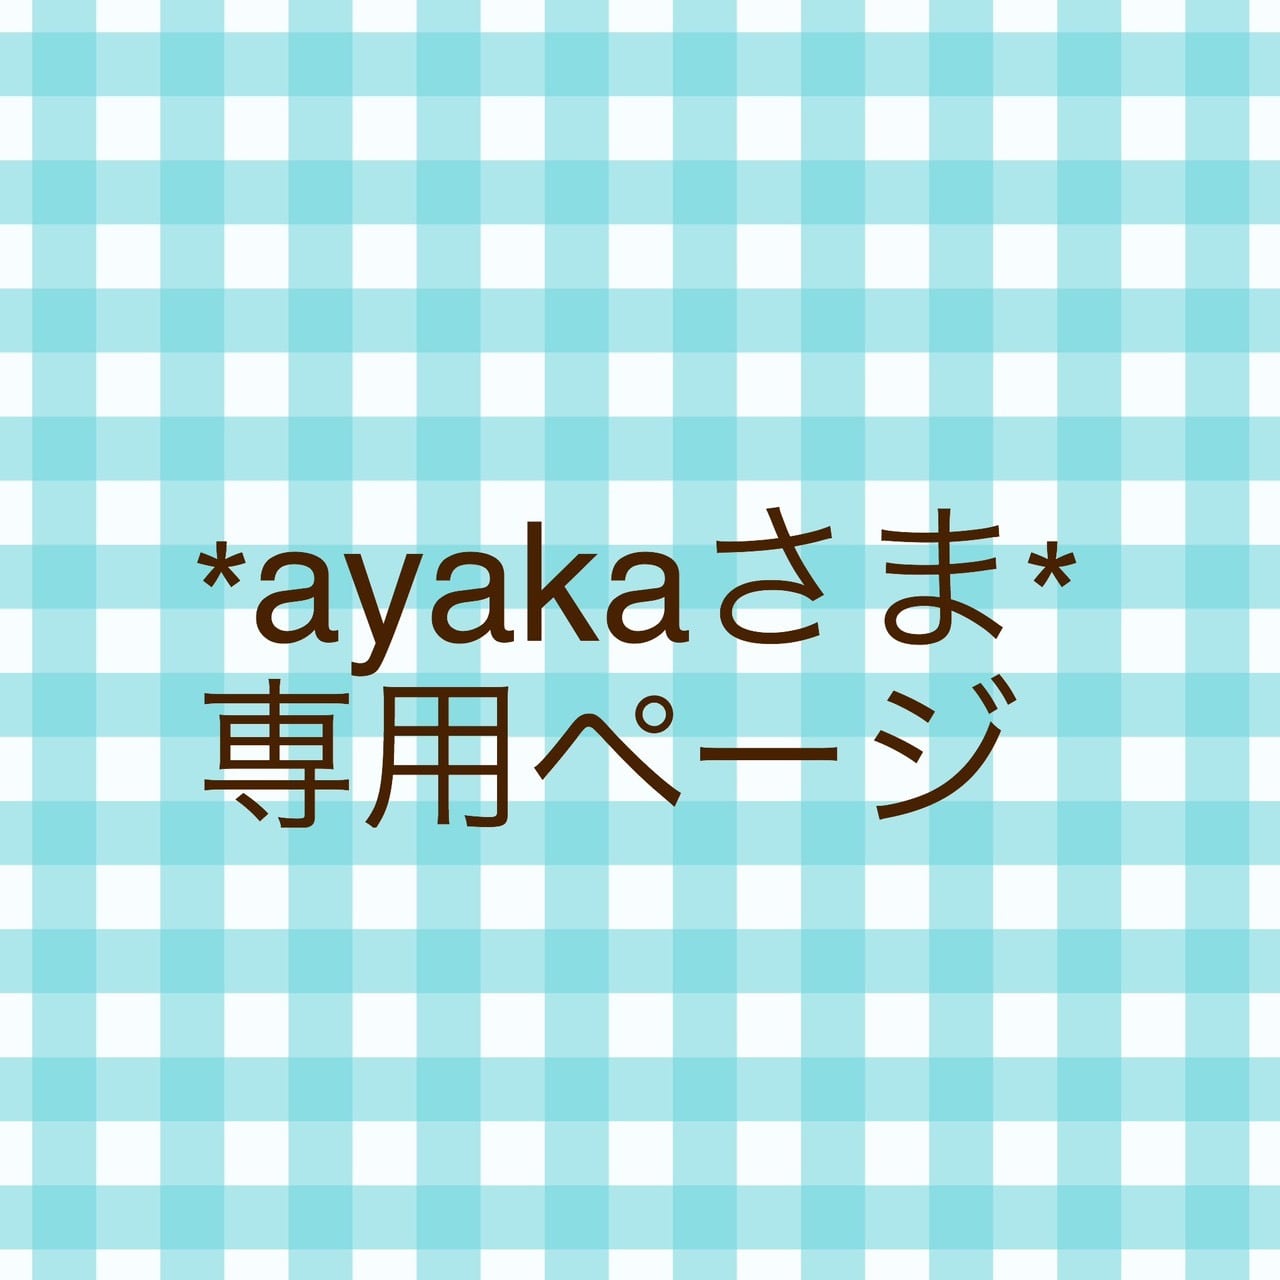 AYAKA 様 専用ページ